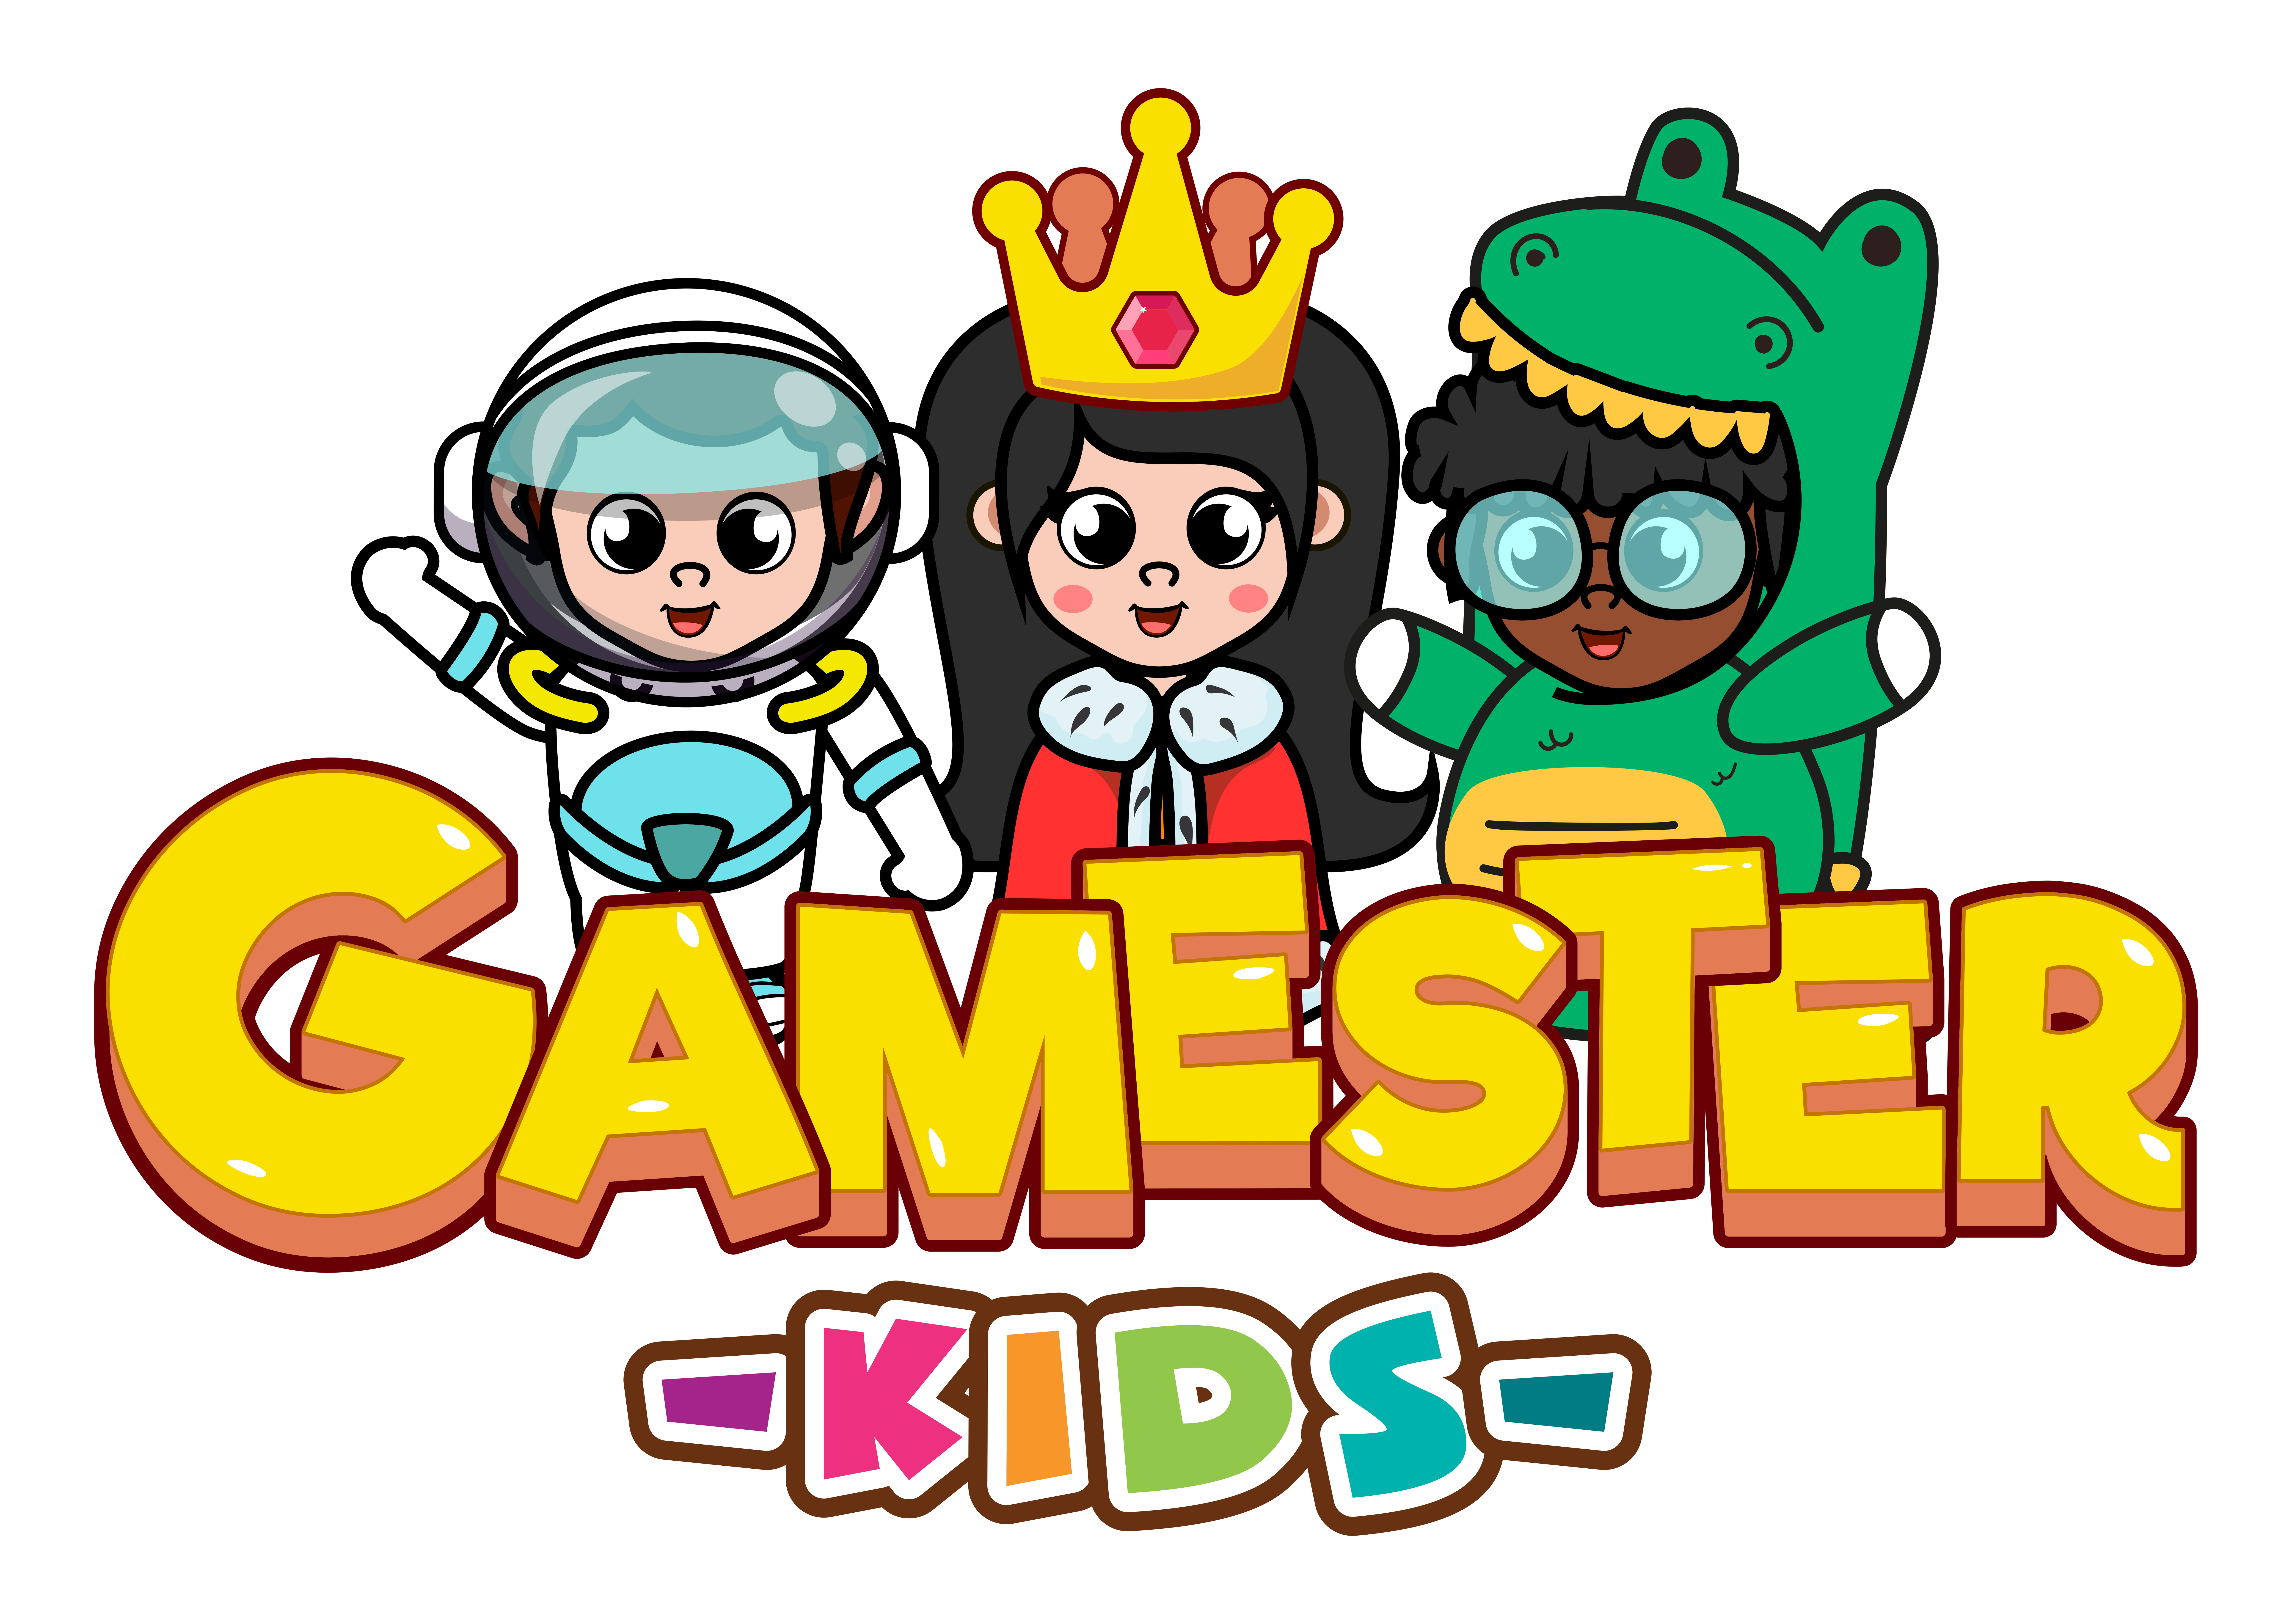 Tiny Minies’in Yaratıcısı Gamester Kids, 850 bin dolar yatırım aldı